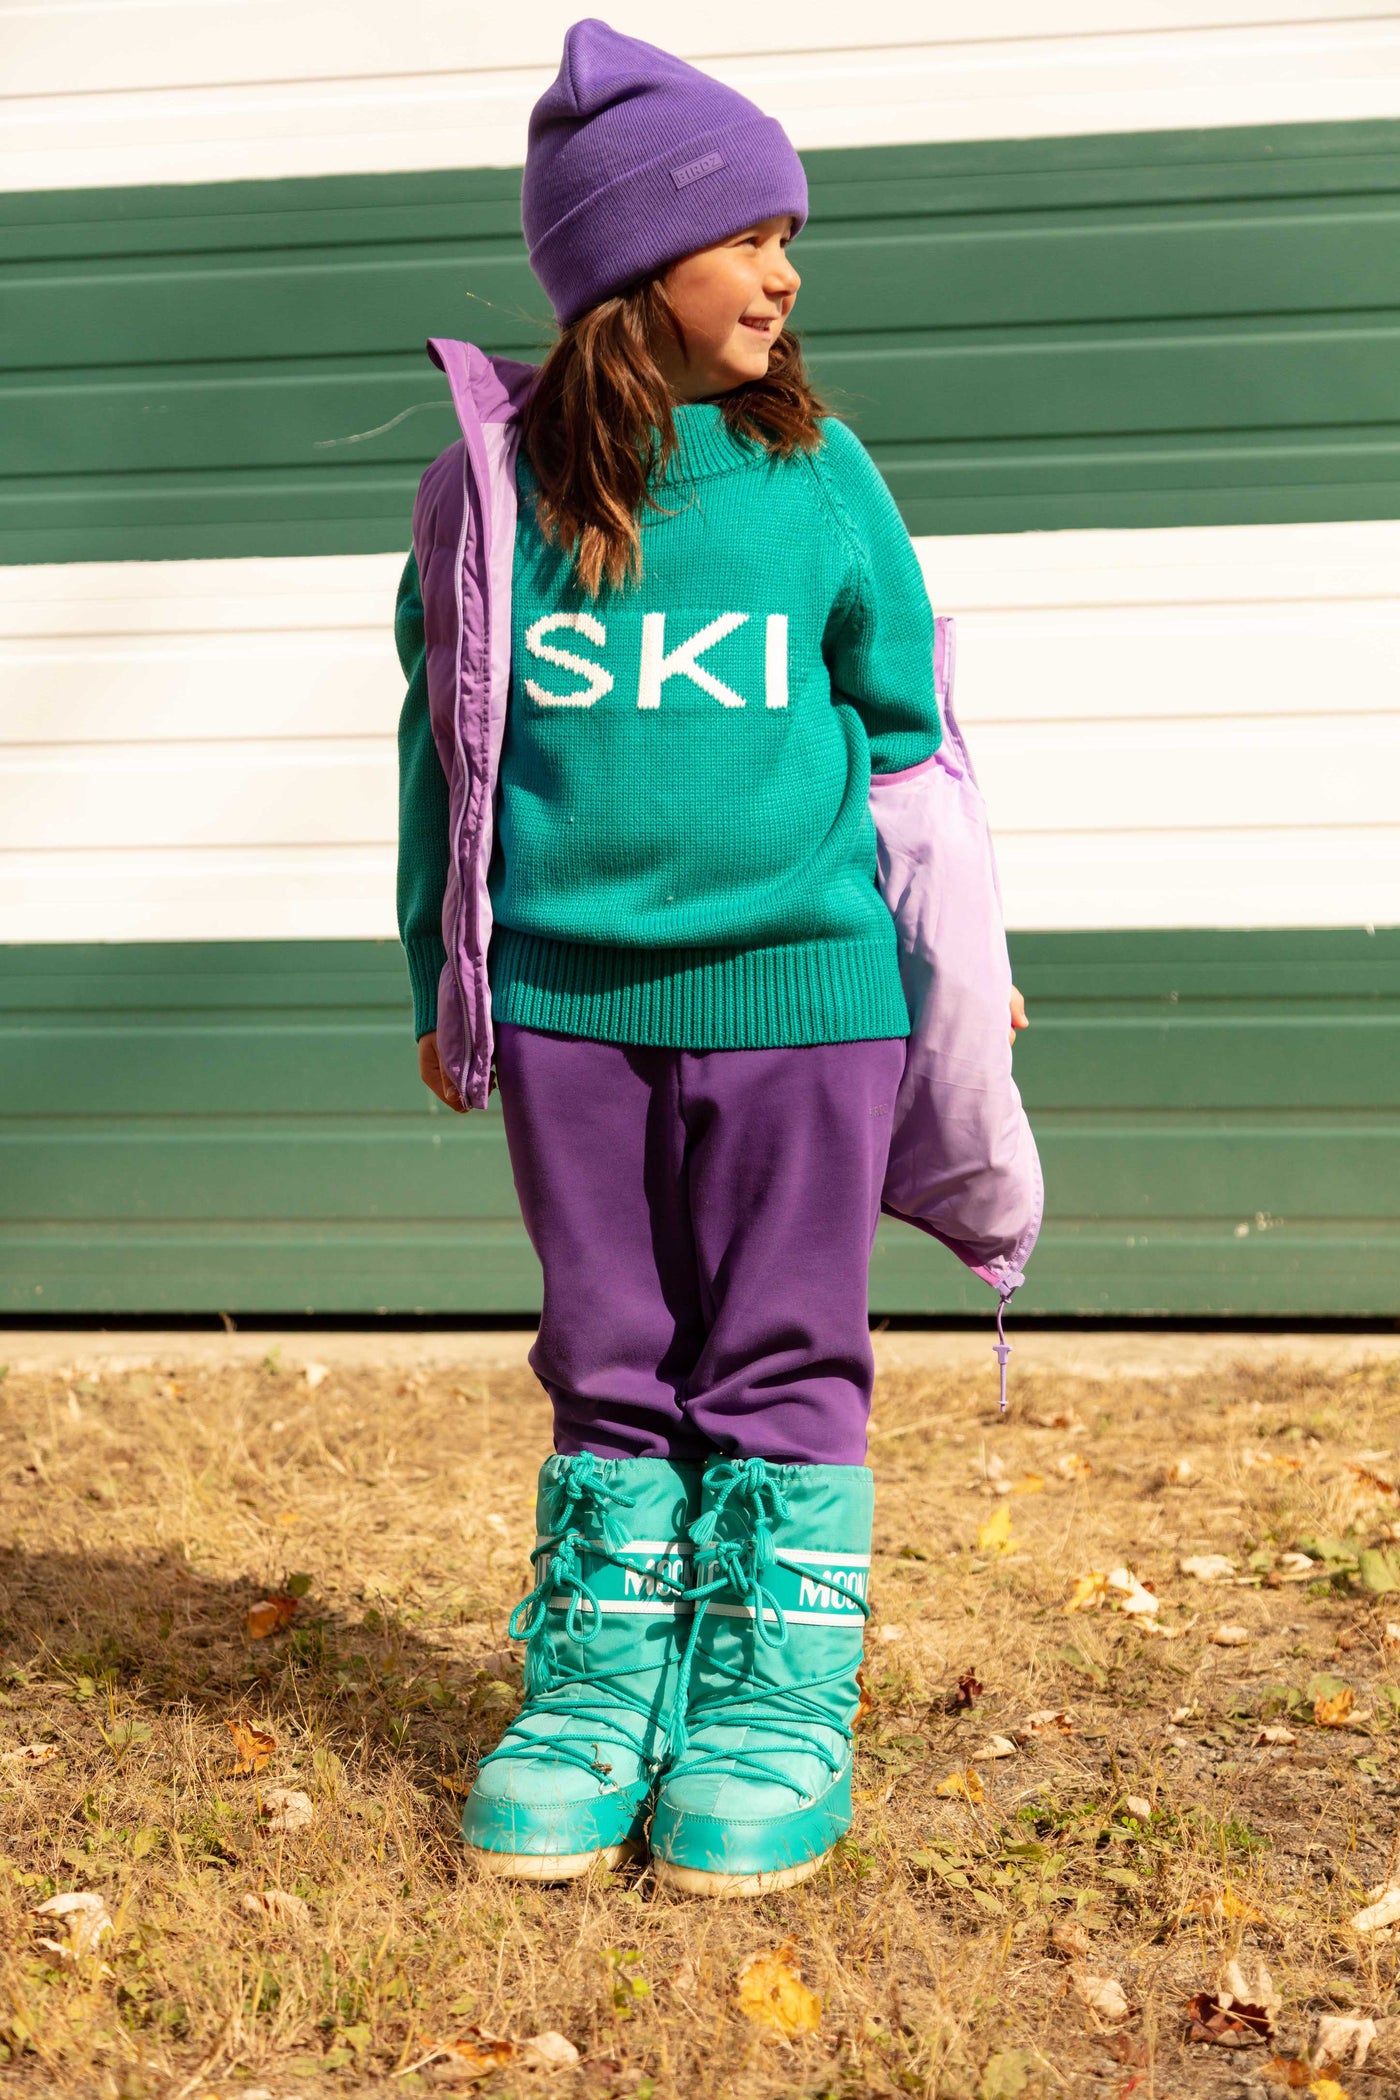 Ski knit |Quetzal Green| Kidz